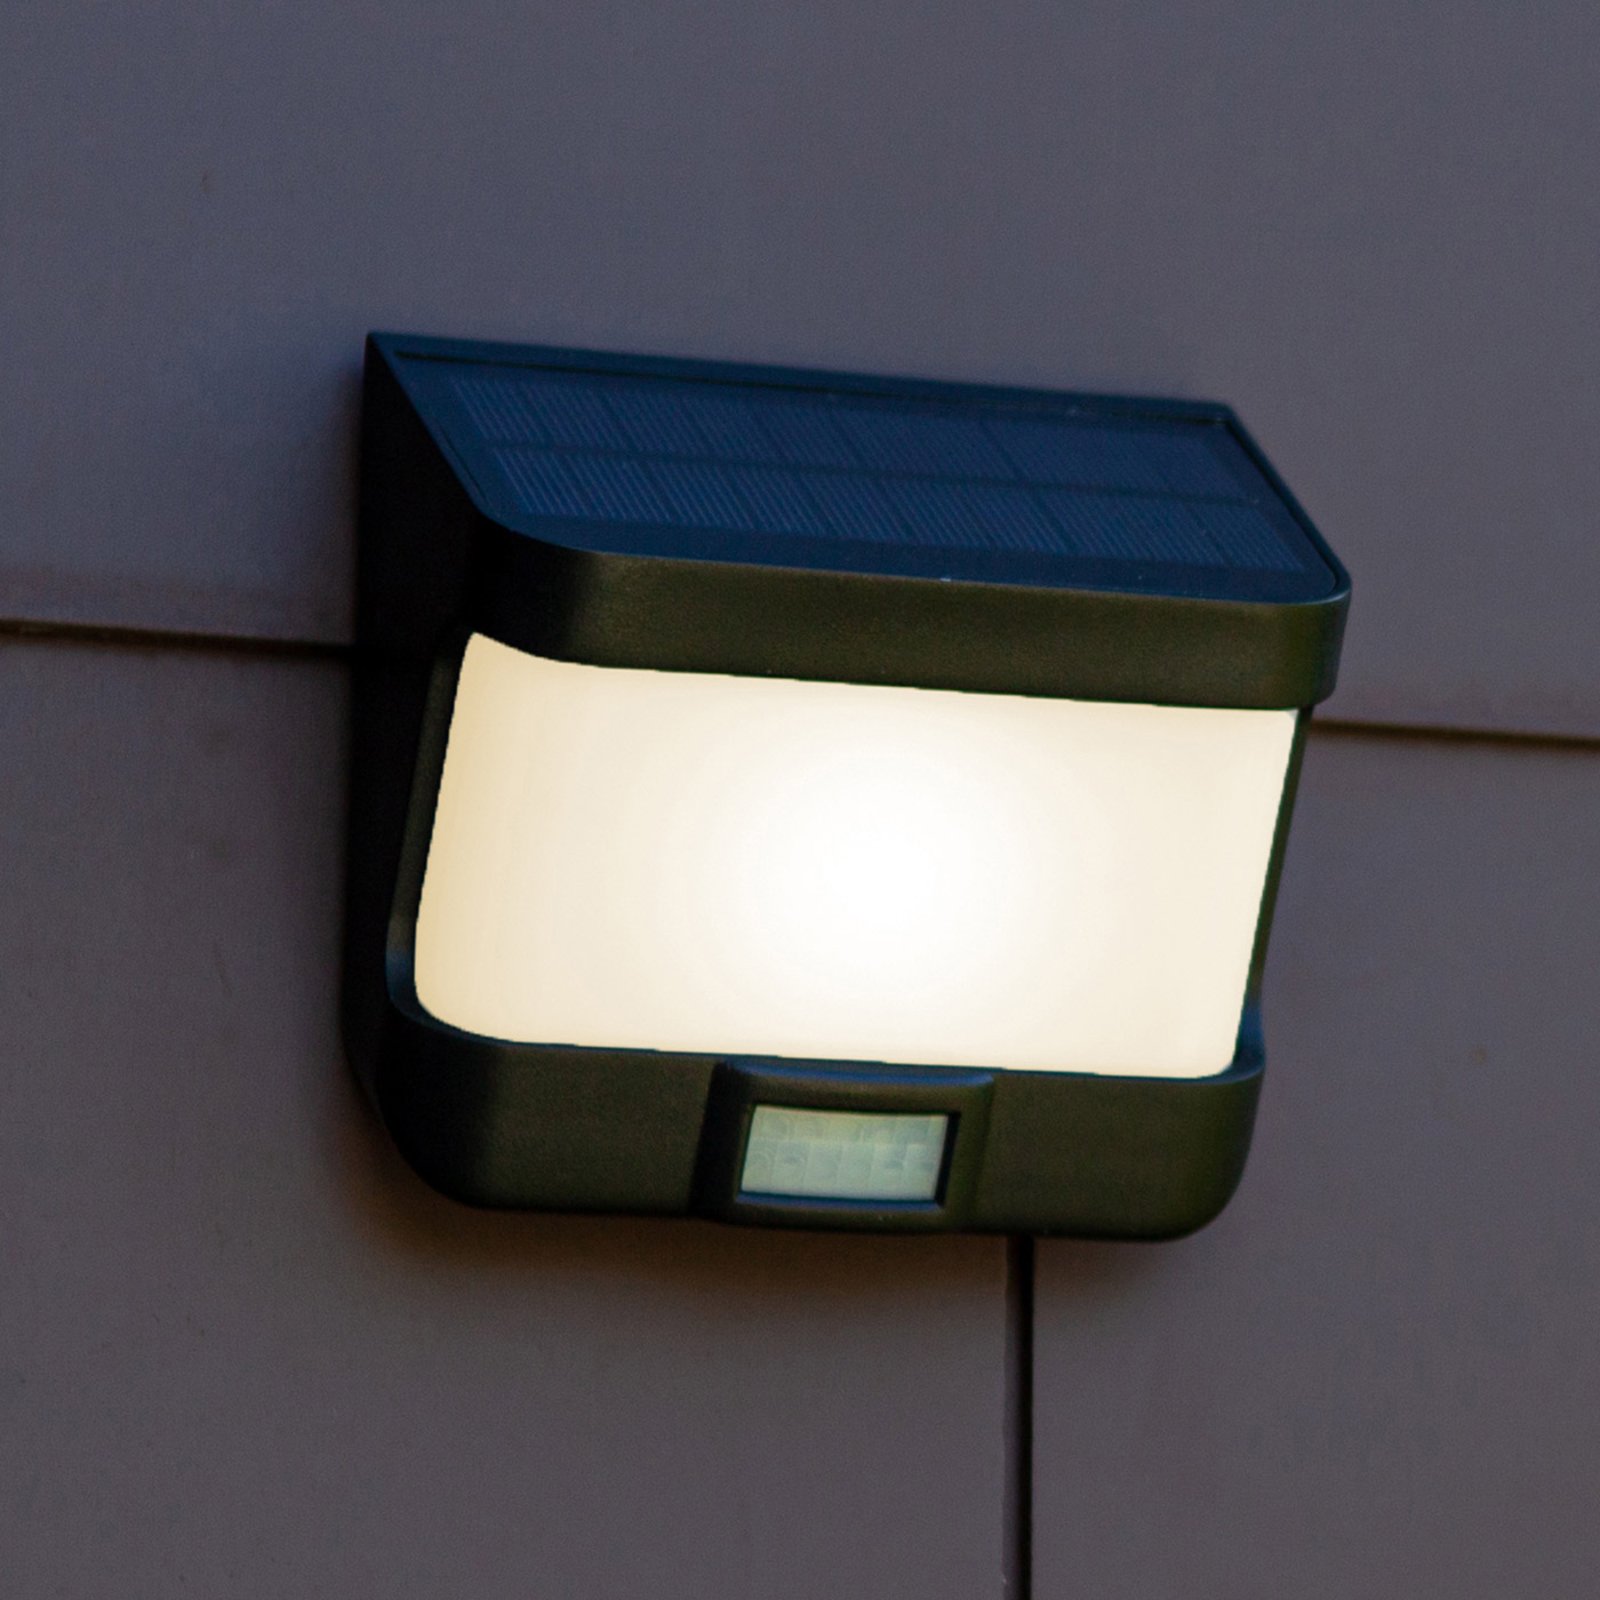 Applique LED solare Try con sensore movimento